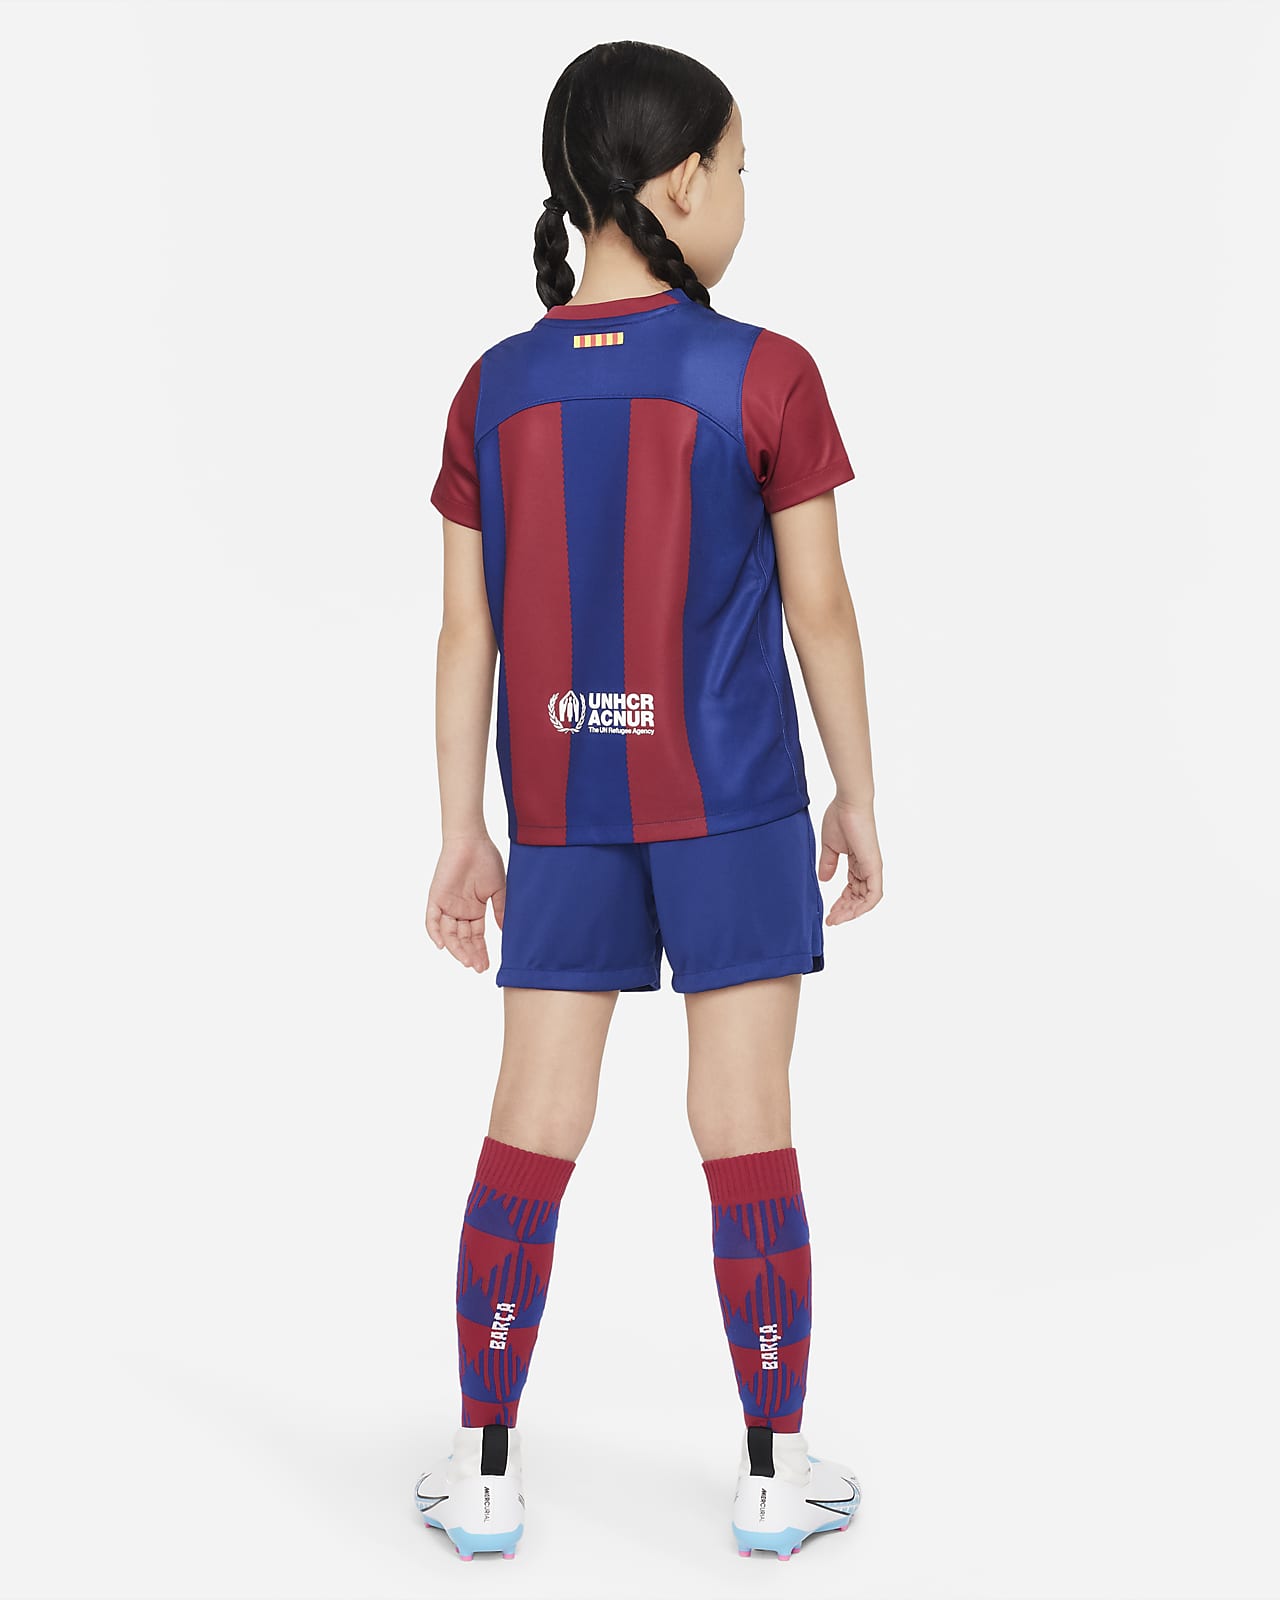 Camisetas y equipaciones del Barcelona FC para niños/as 2023/24. Nike ES